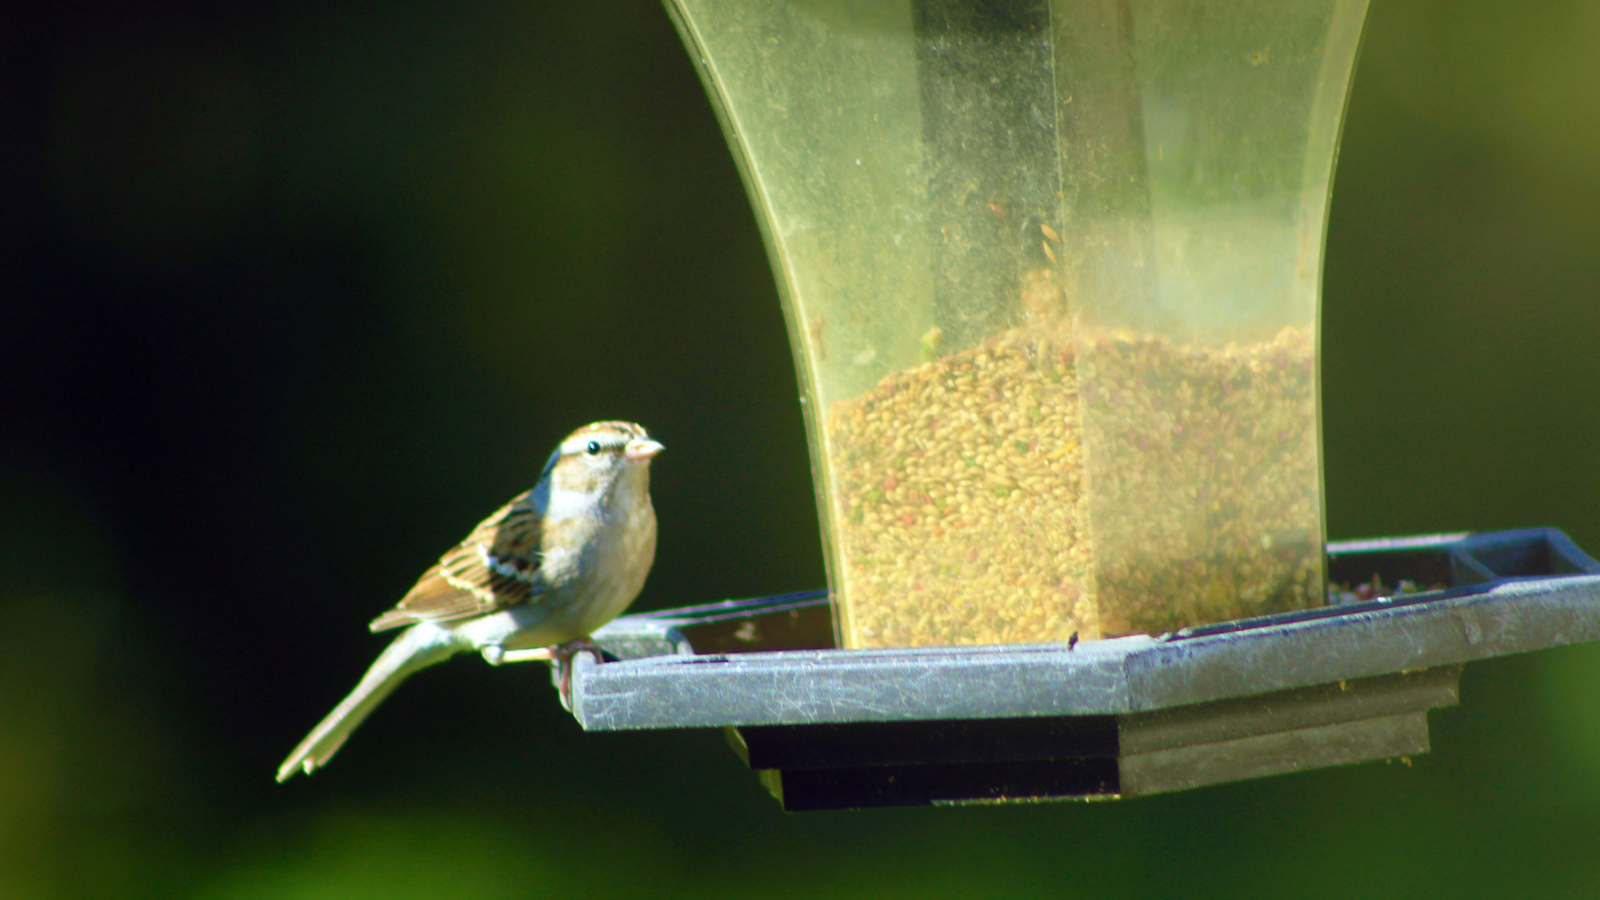 A sparrow on a bird feeder.